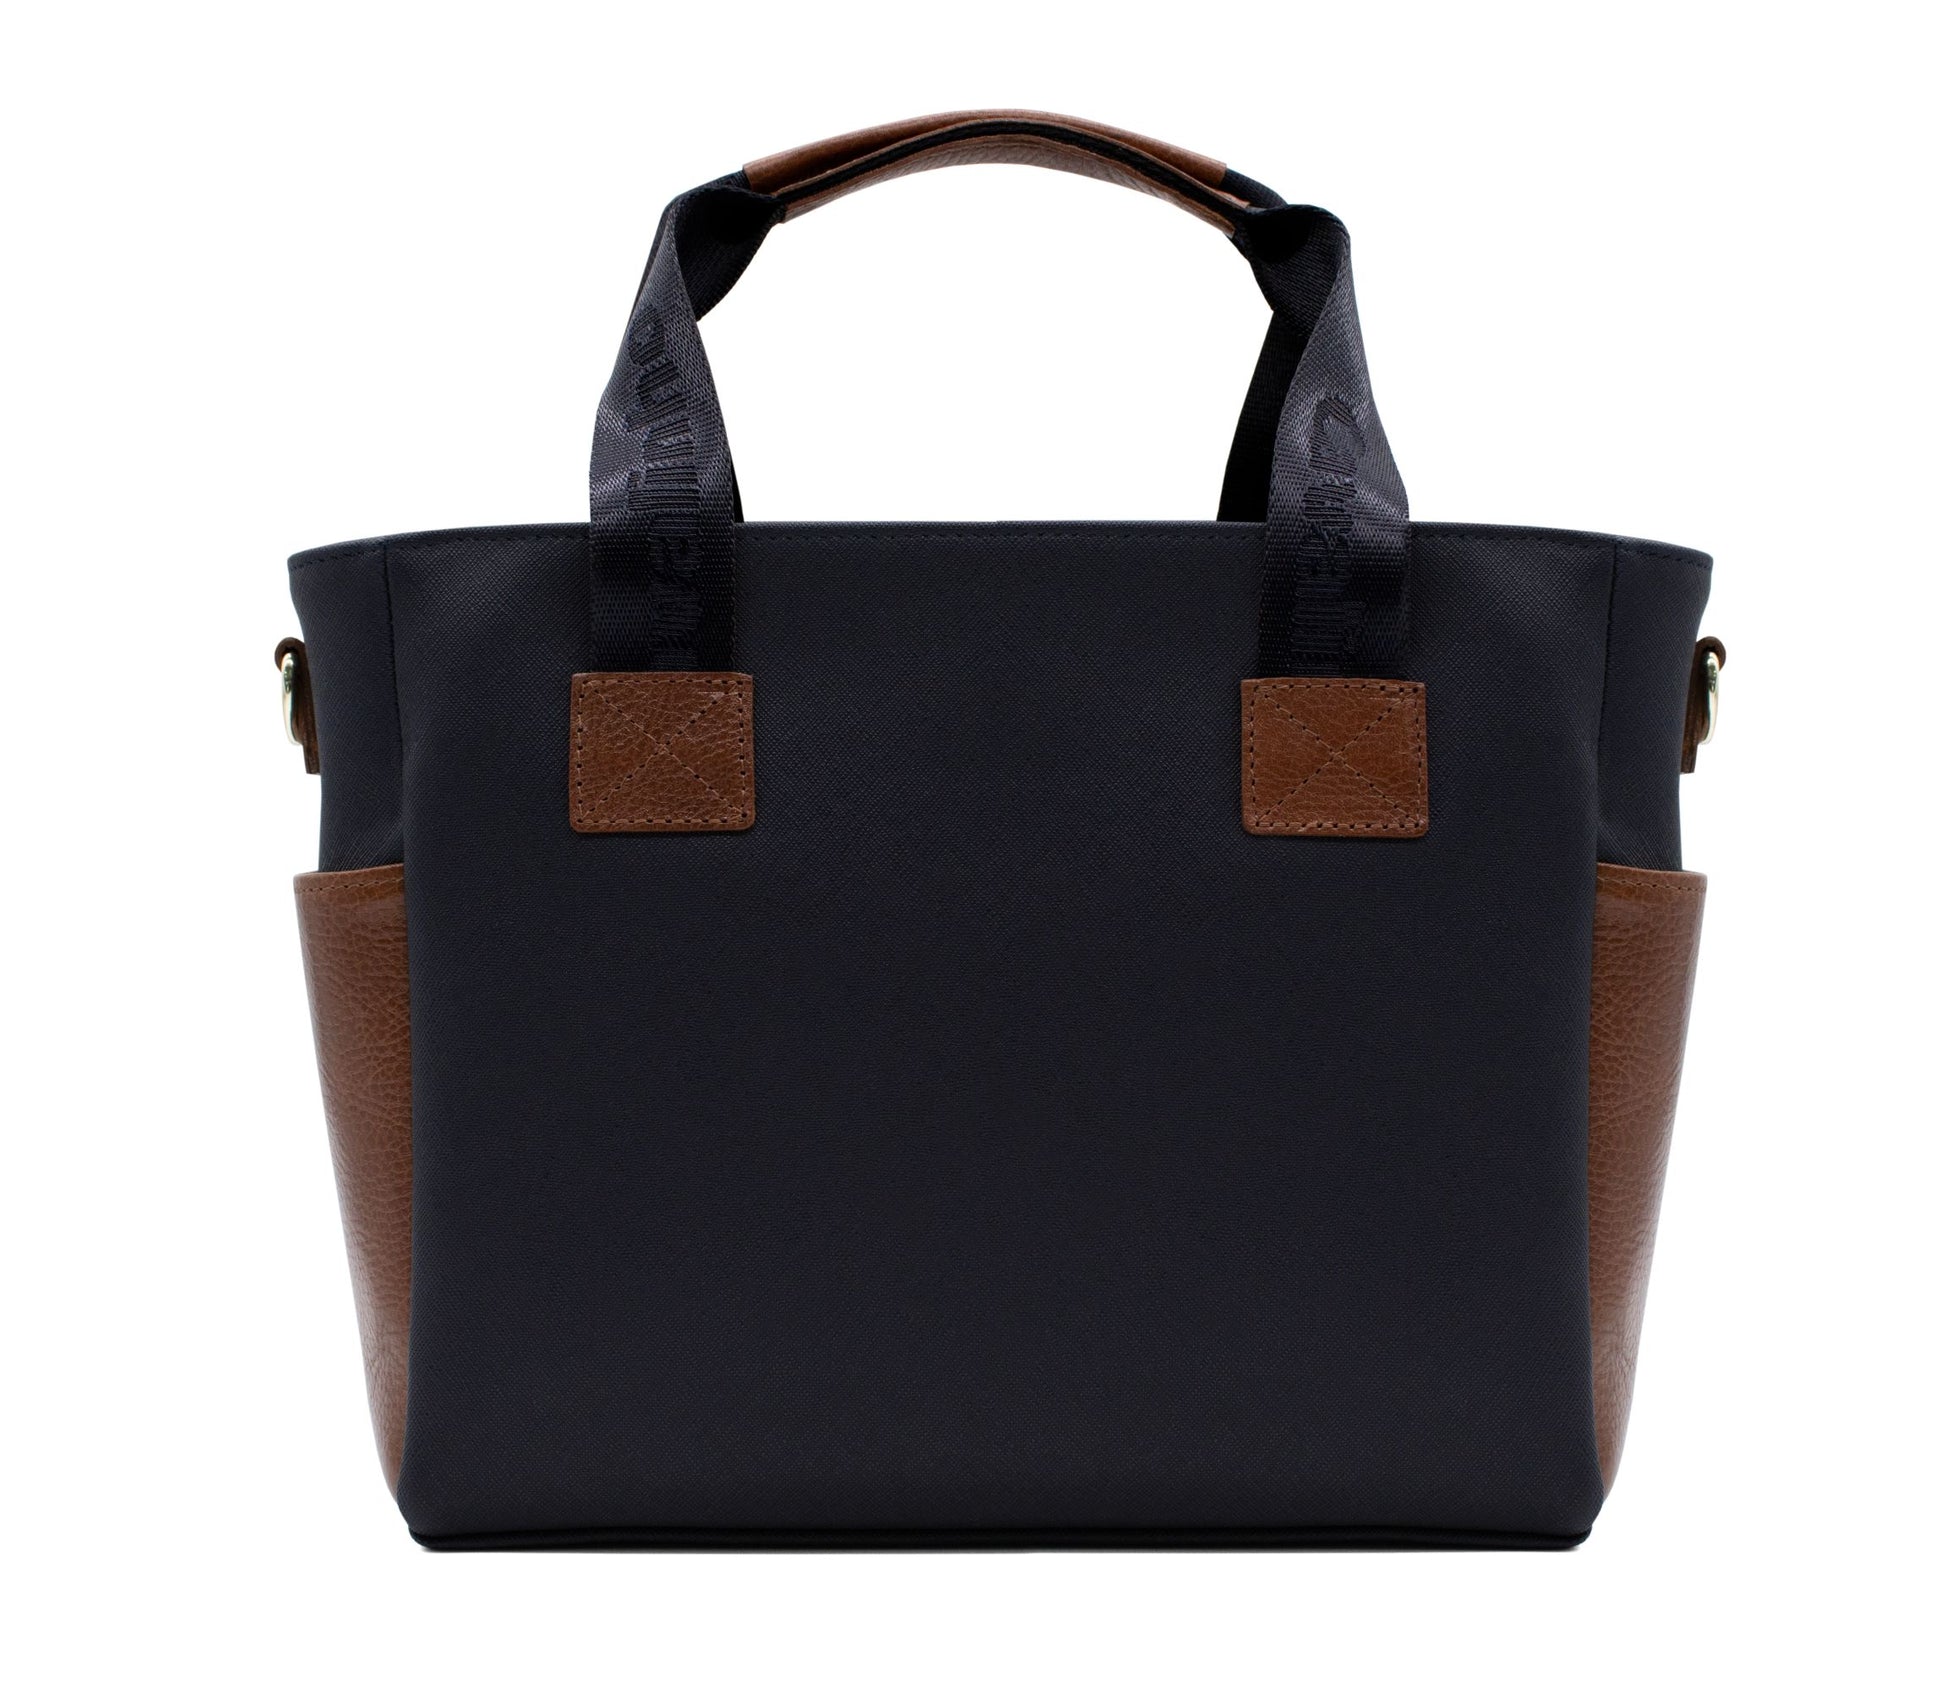 Cavalinho Unique Handbag - Black / SaddleBrown / White - 18260408.34_3